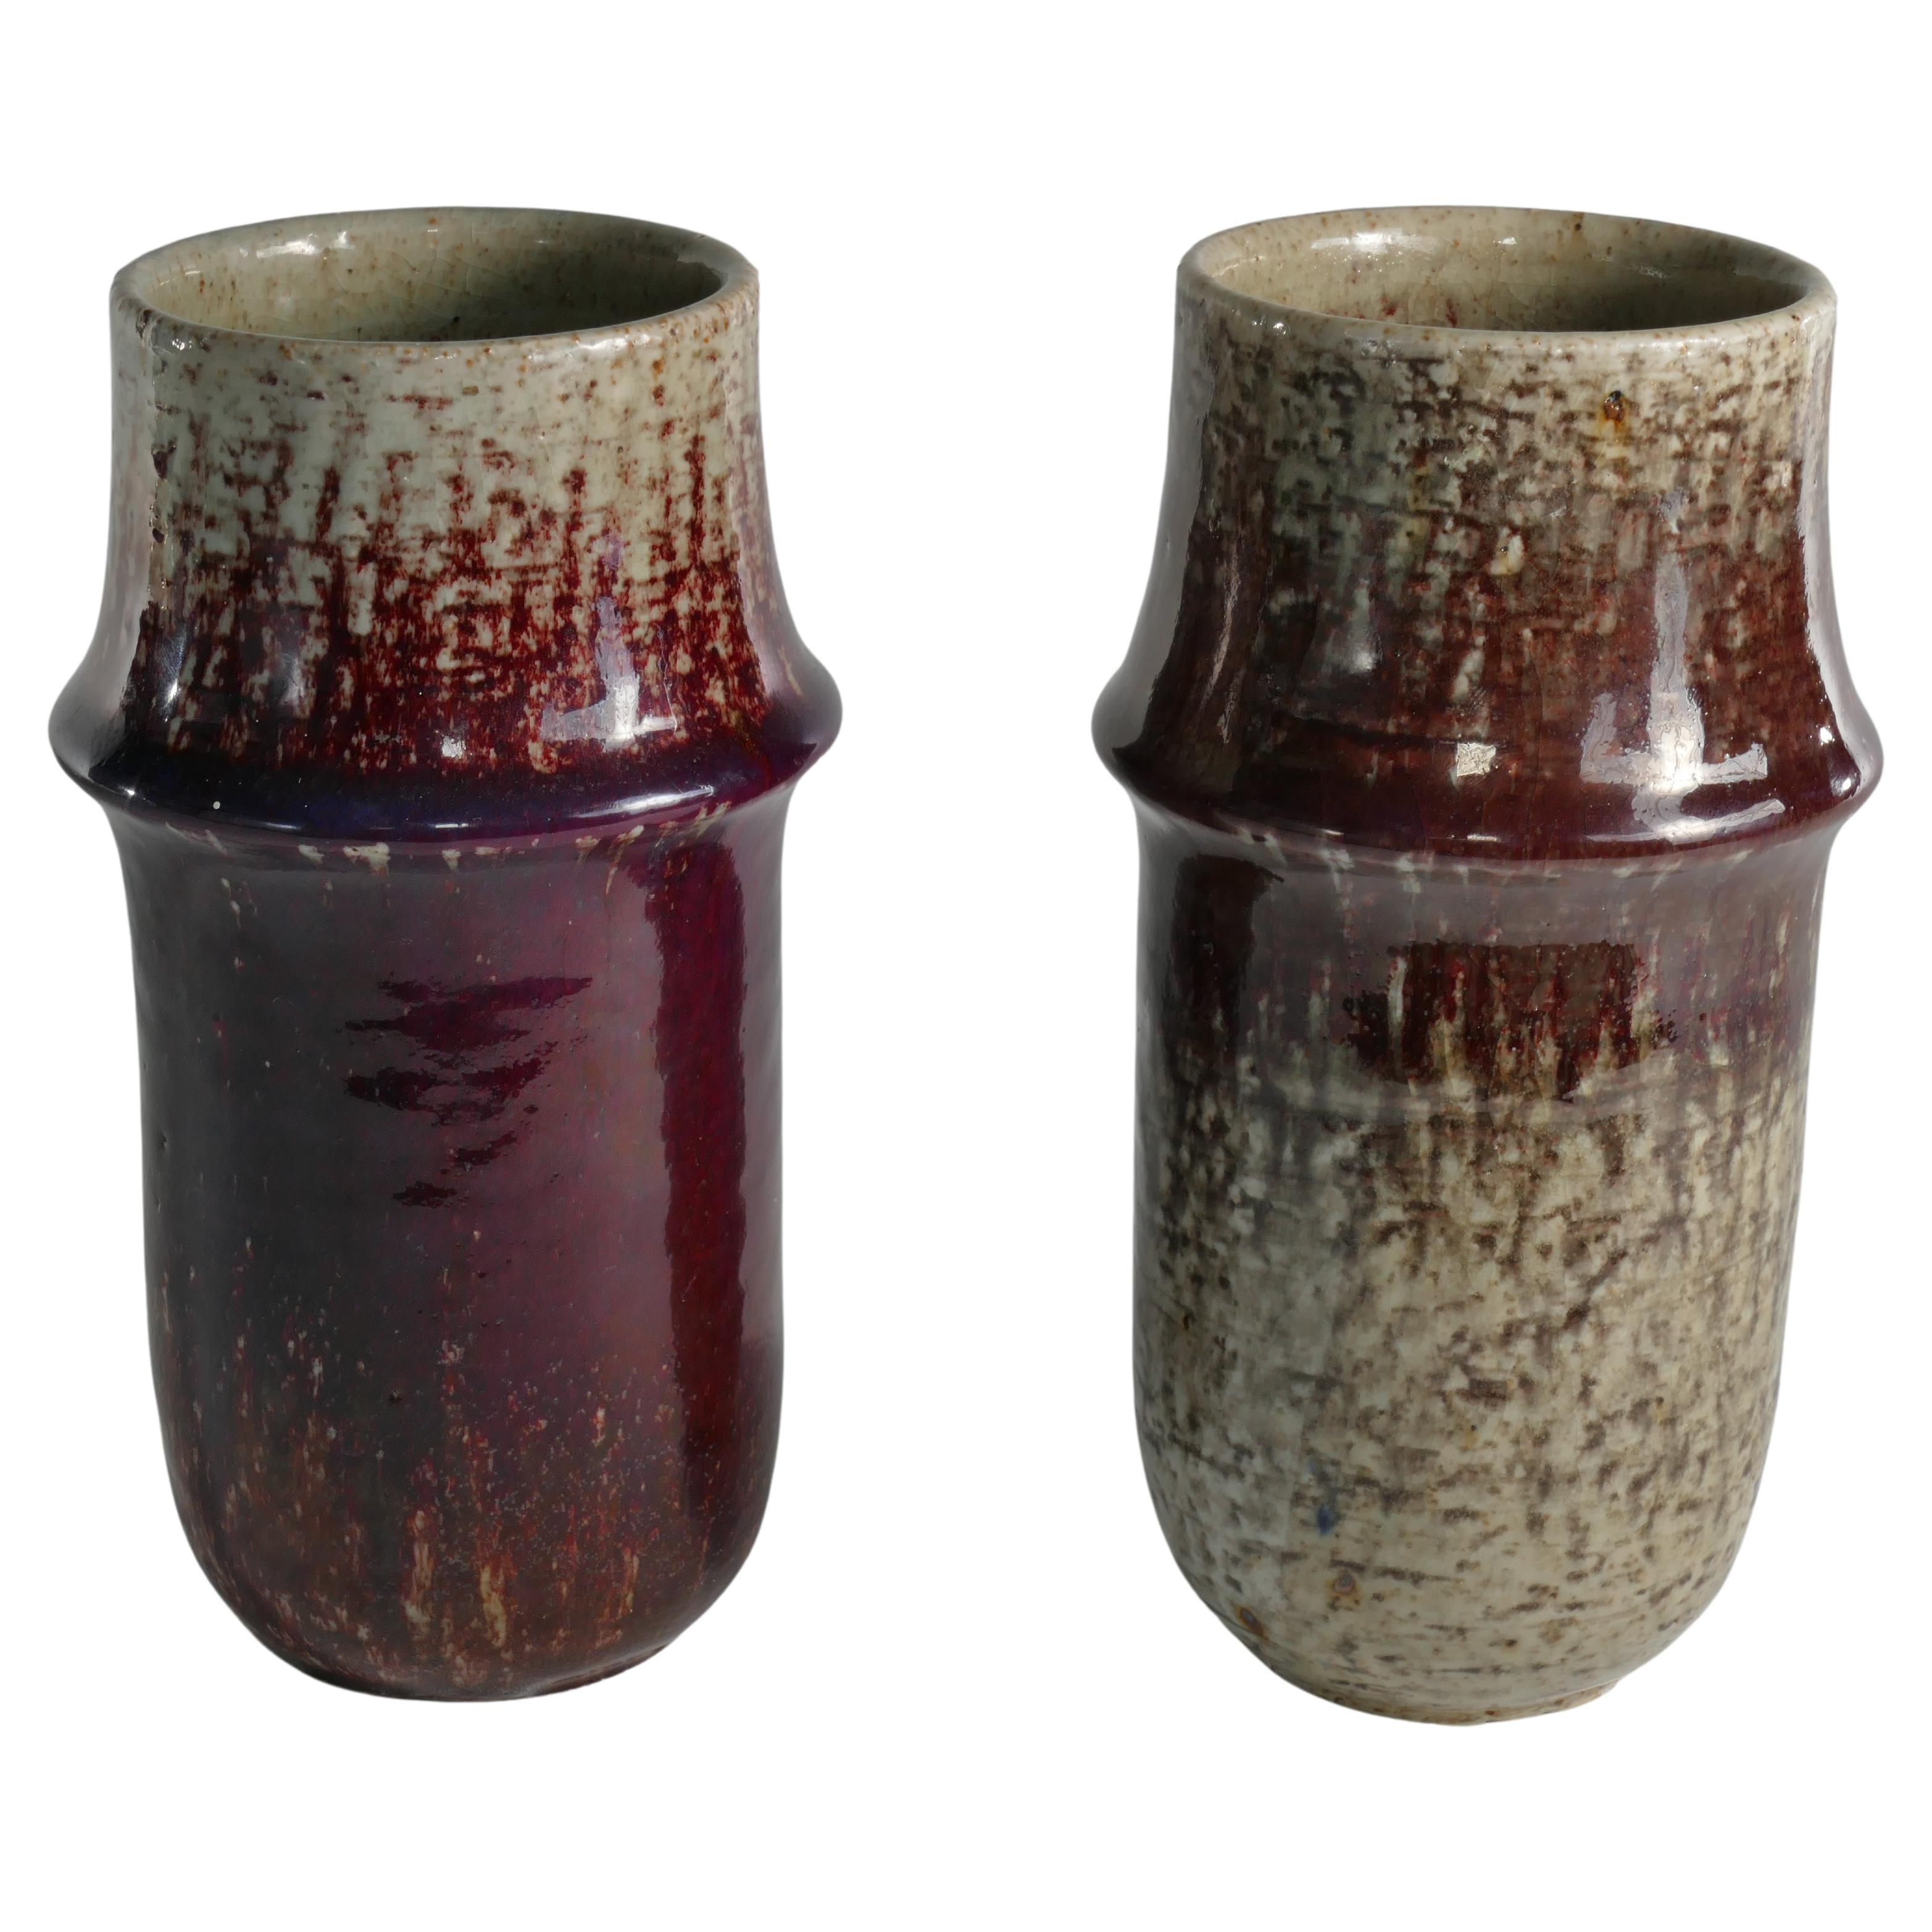 Ce superbe ensemble de 2 vases en terre chamottée, conçu par Sylvia Leuchovius, est produit dans l'atelier de Rörstrand, signé et daté de 1976. Provenant de la rare production de Rörstands appelée 